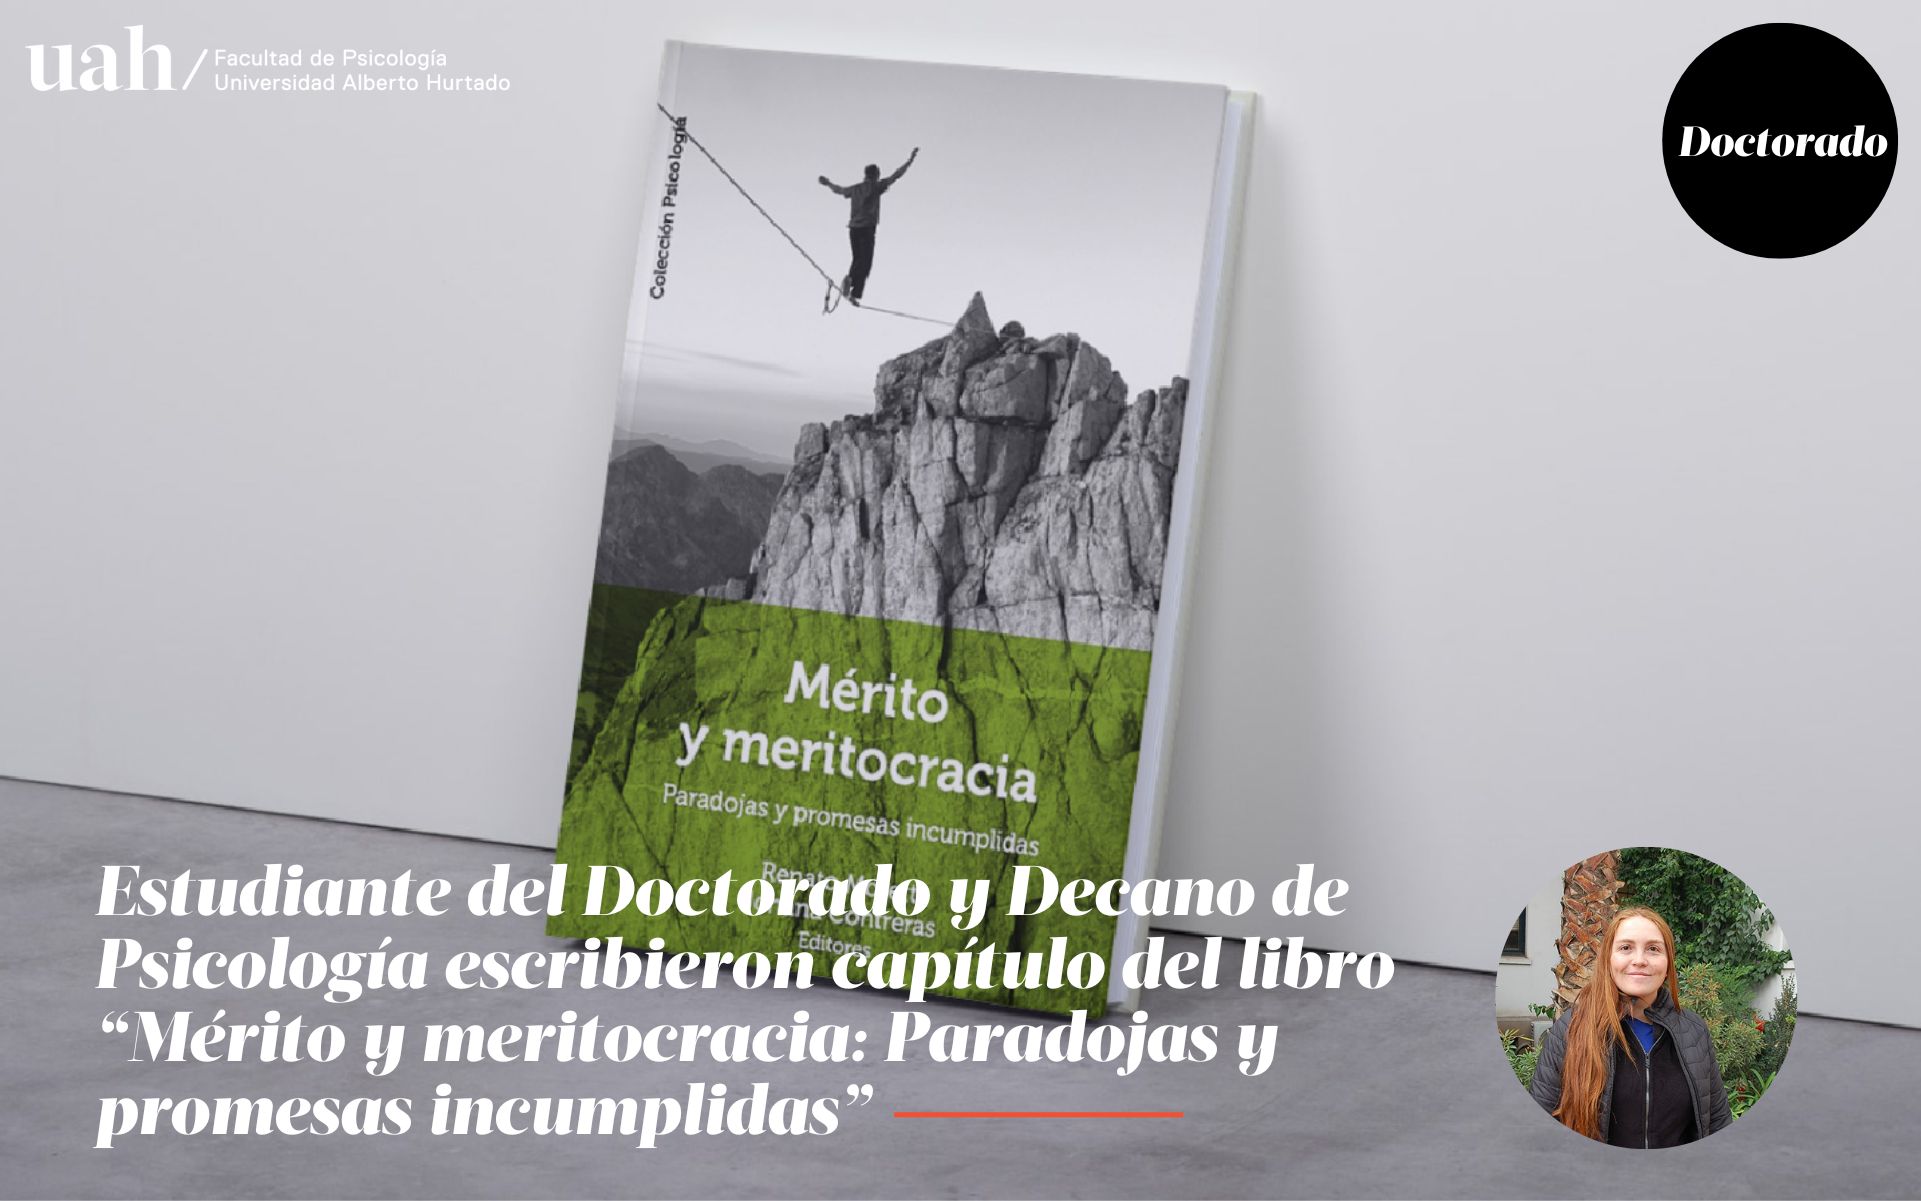 DOCTORADO | Estudiante del Doctorado y Decano de Psicología escribieron capítulo del libro “Mérito y meritocracia: Paradojas y promesas incumplidas”